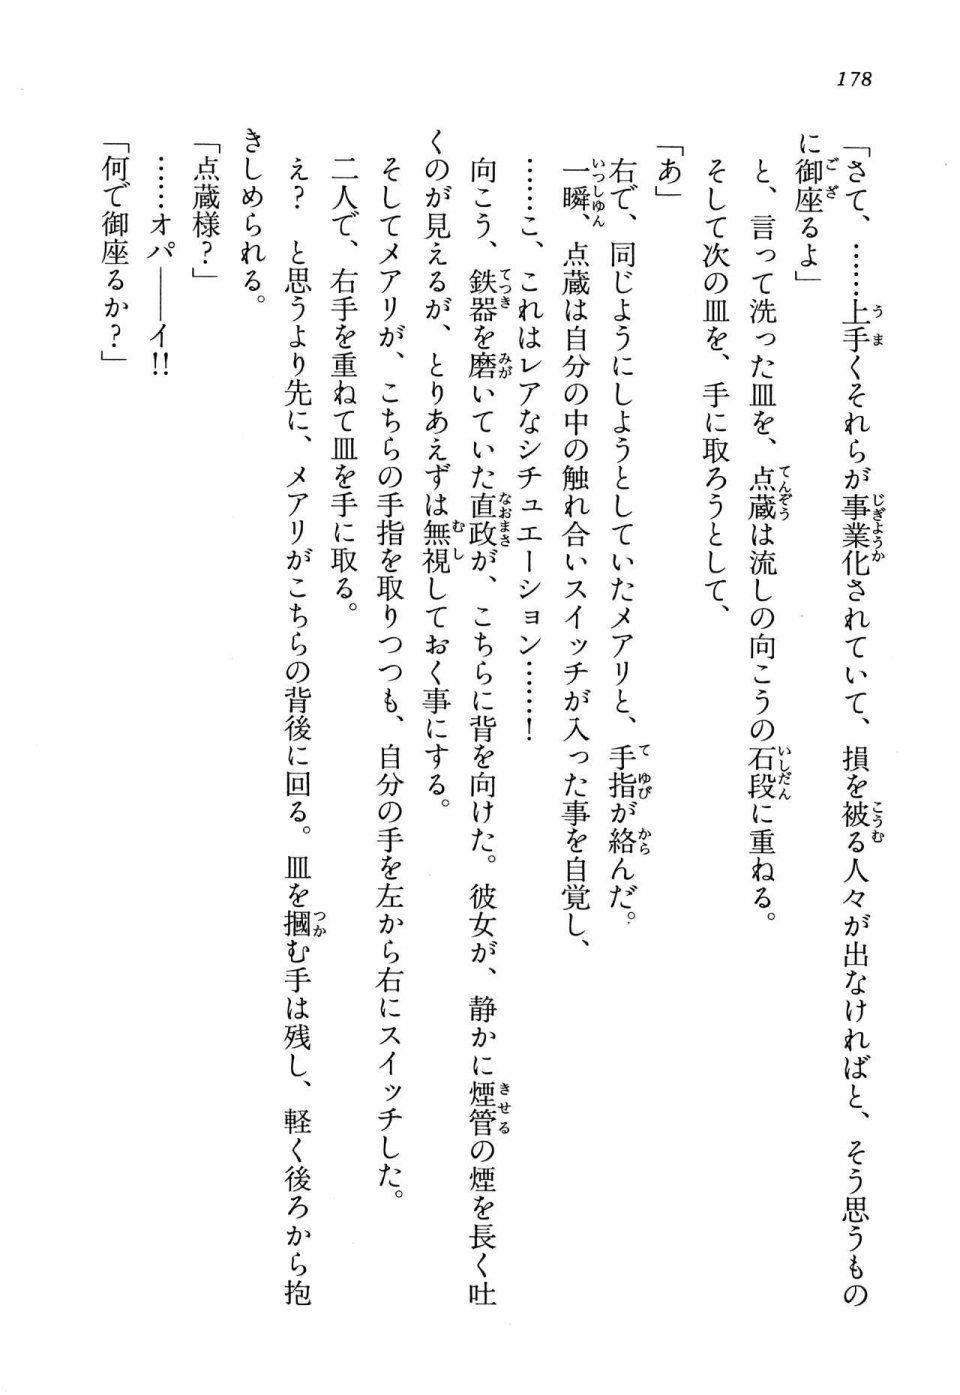 Kyoukai Senjou no Horizon LN Vol 13(6A) - Photo #178